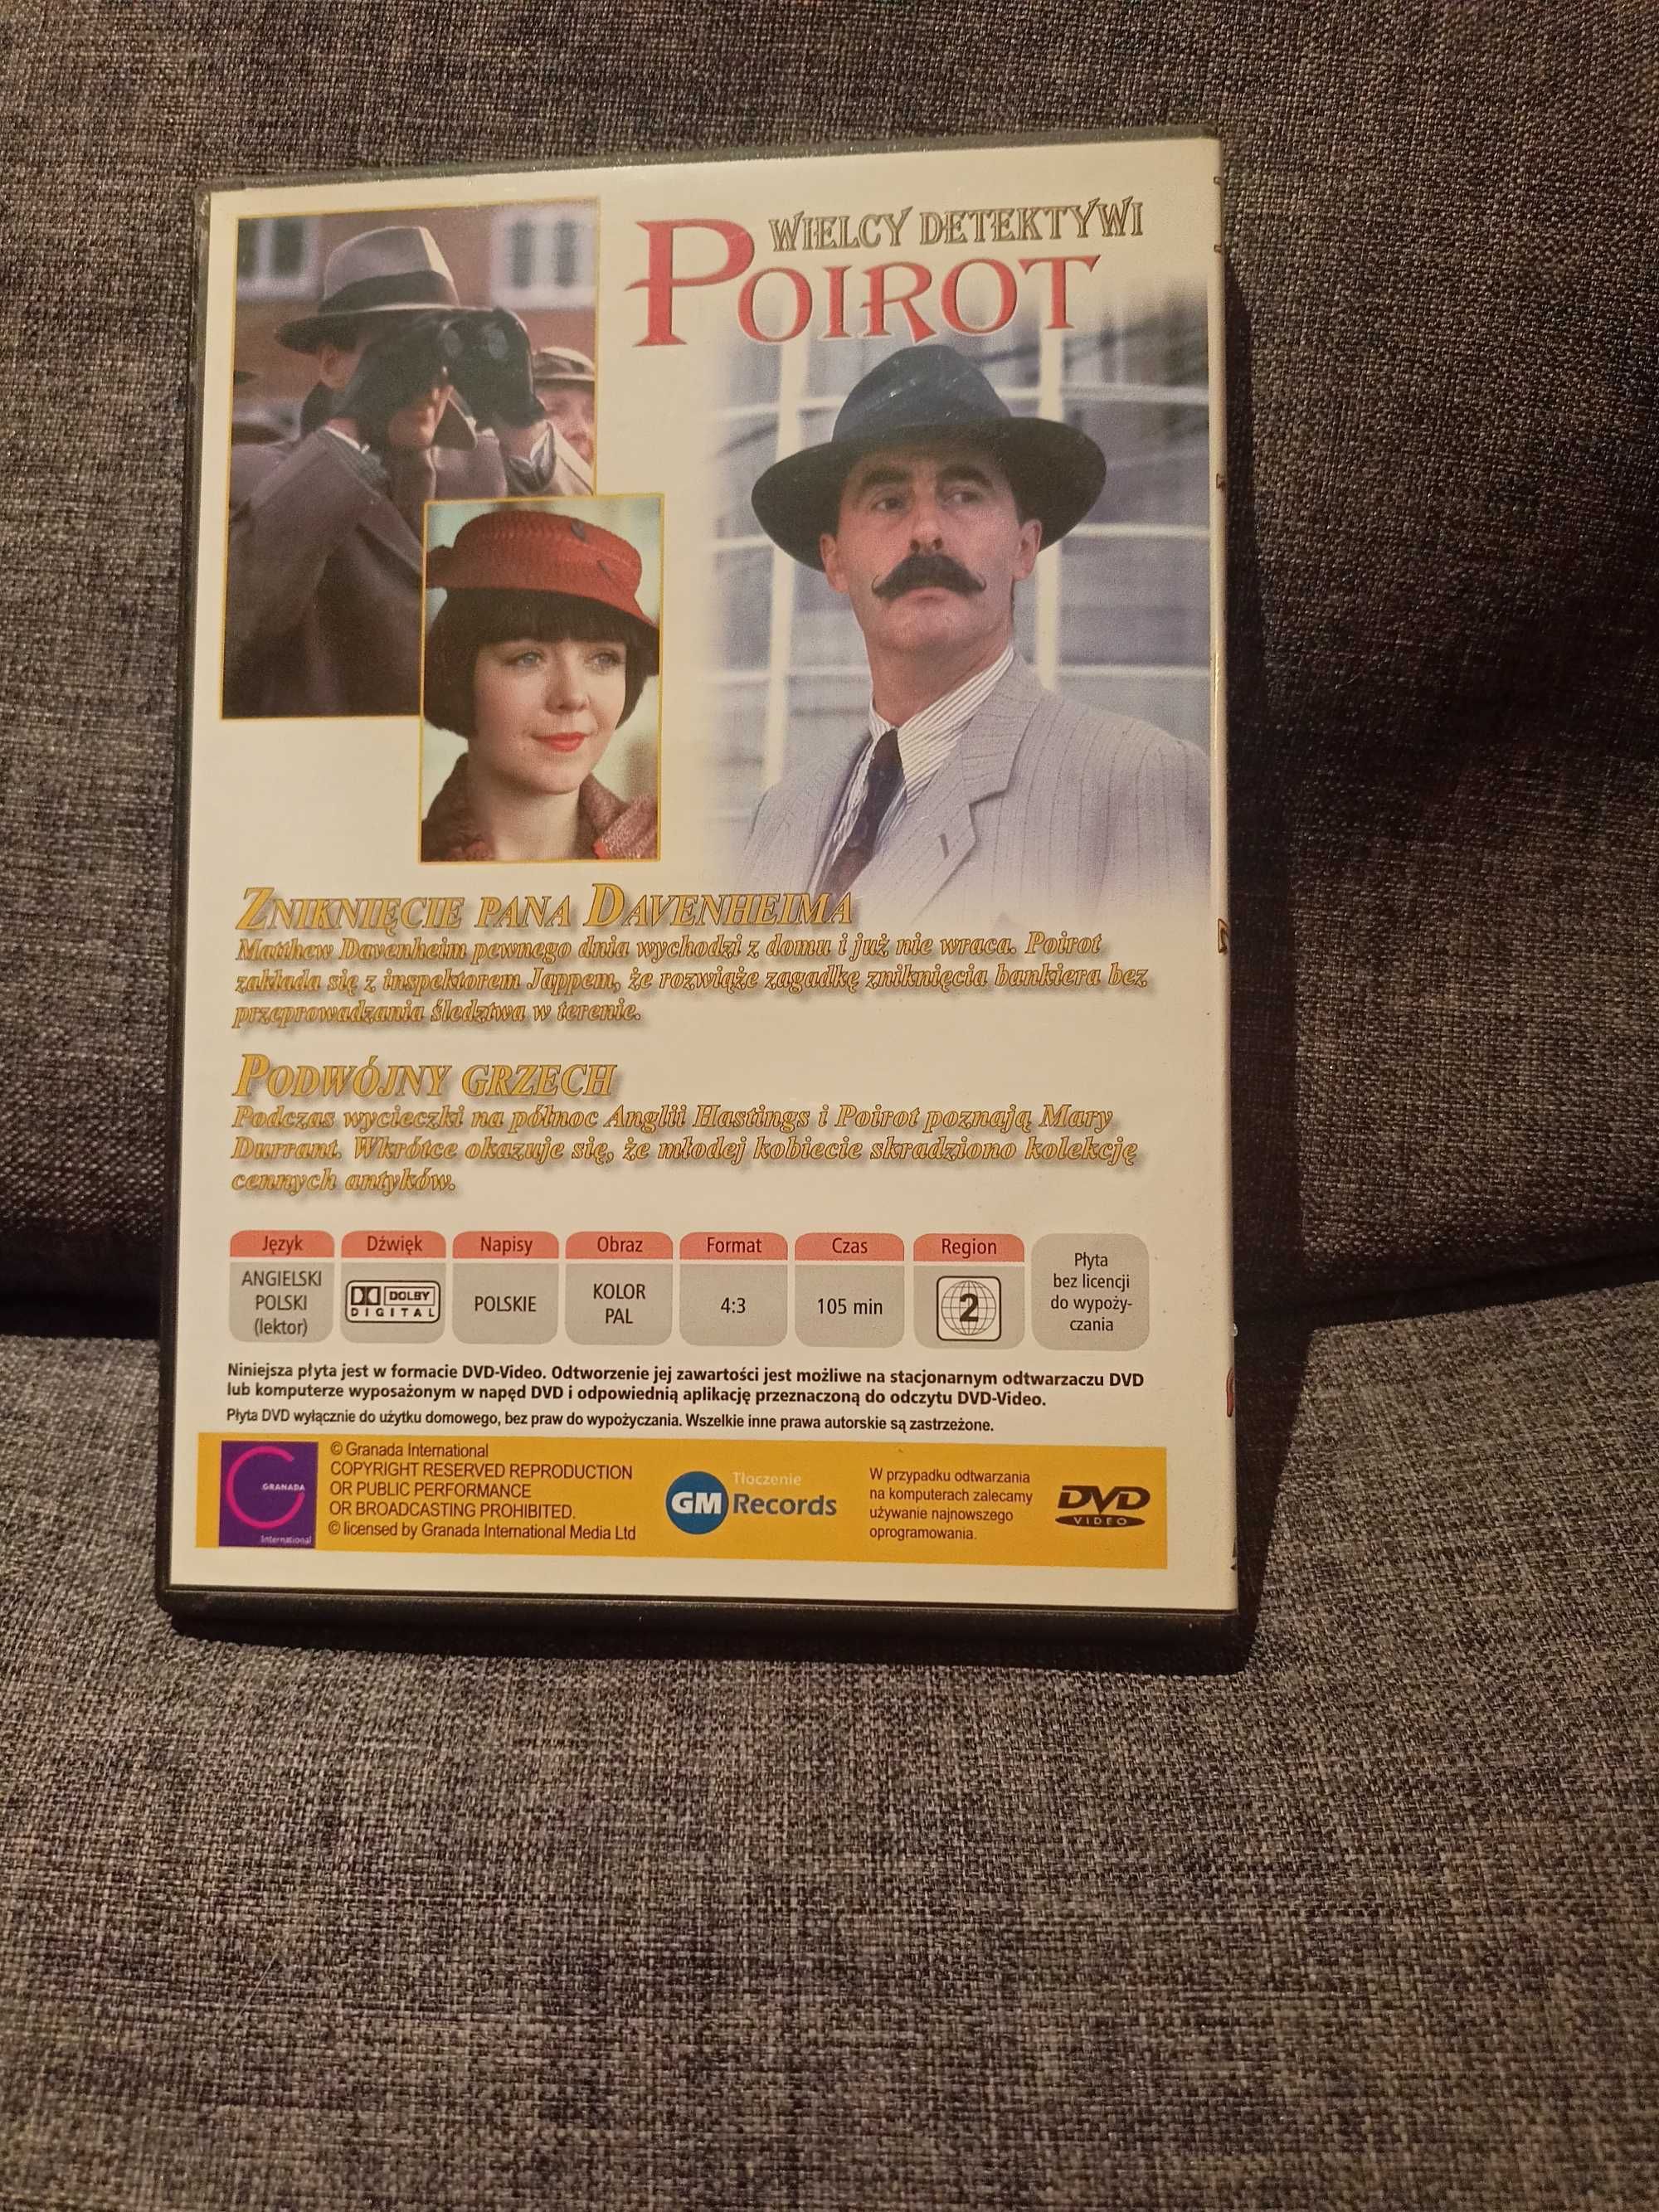 DVD Poirot 10. Zniknięcie pana Davenheima. Podwójny grzech